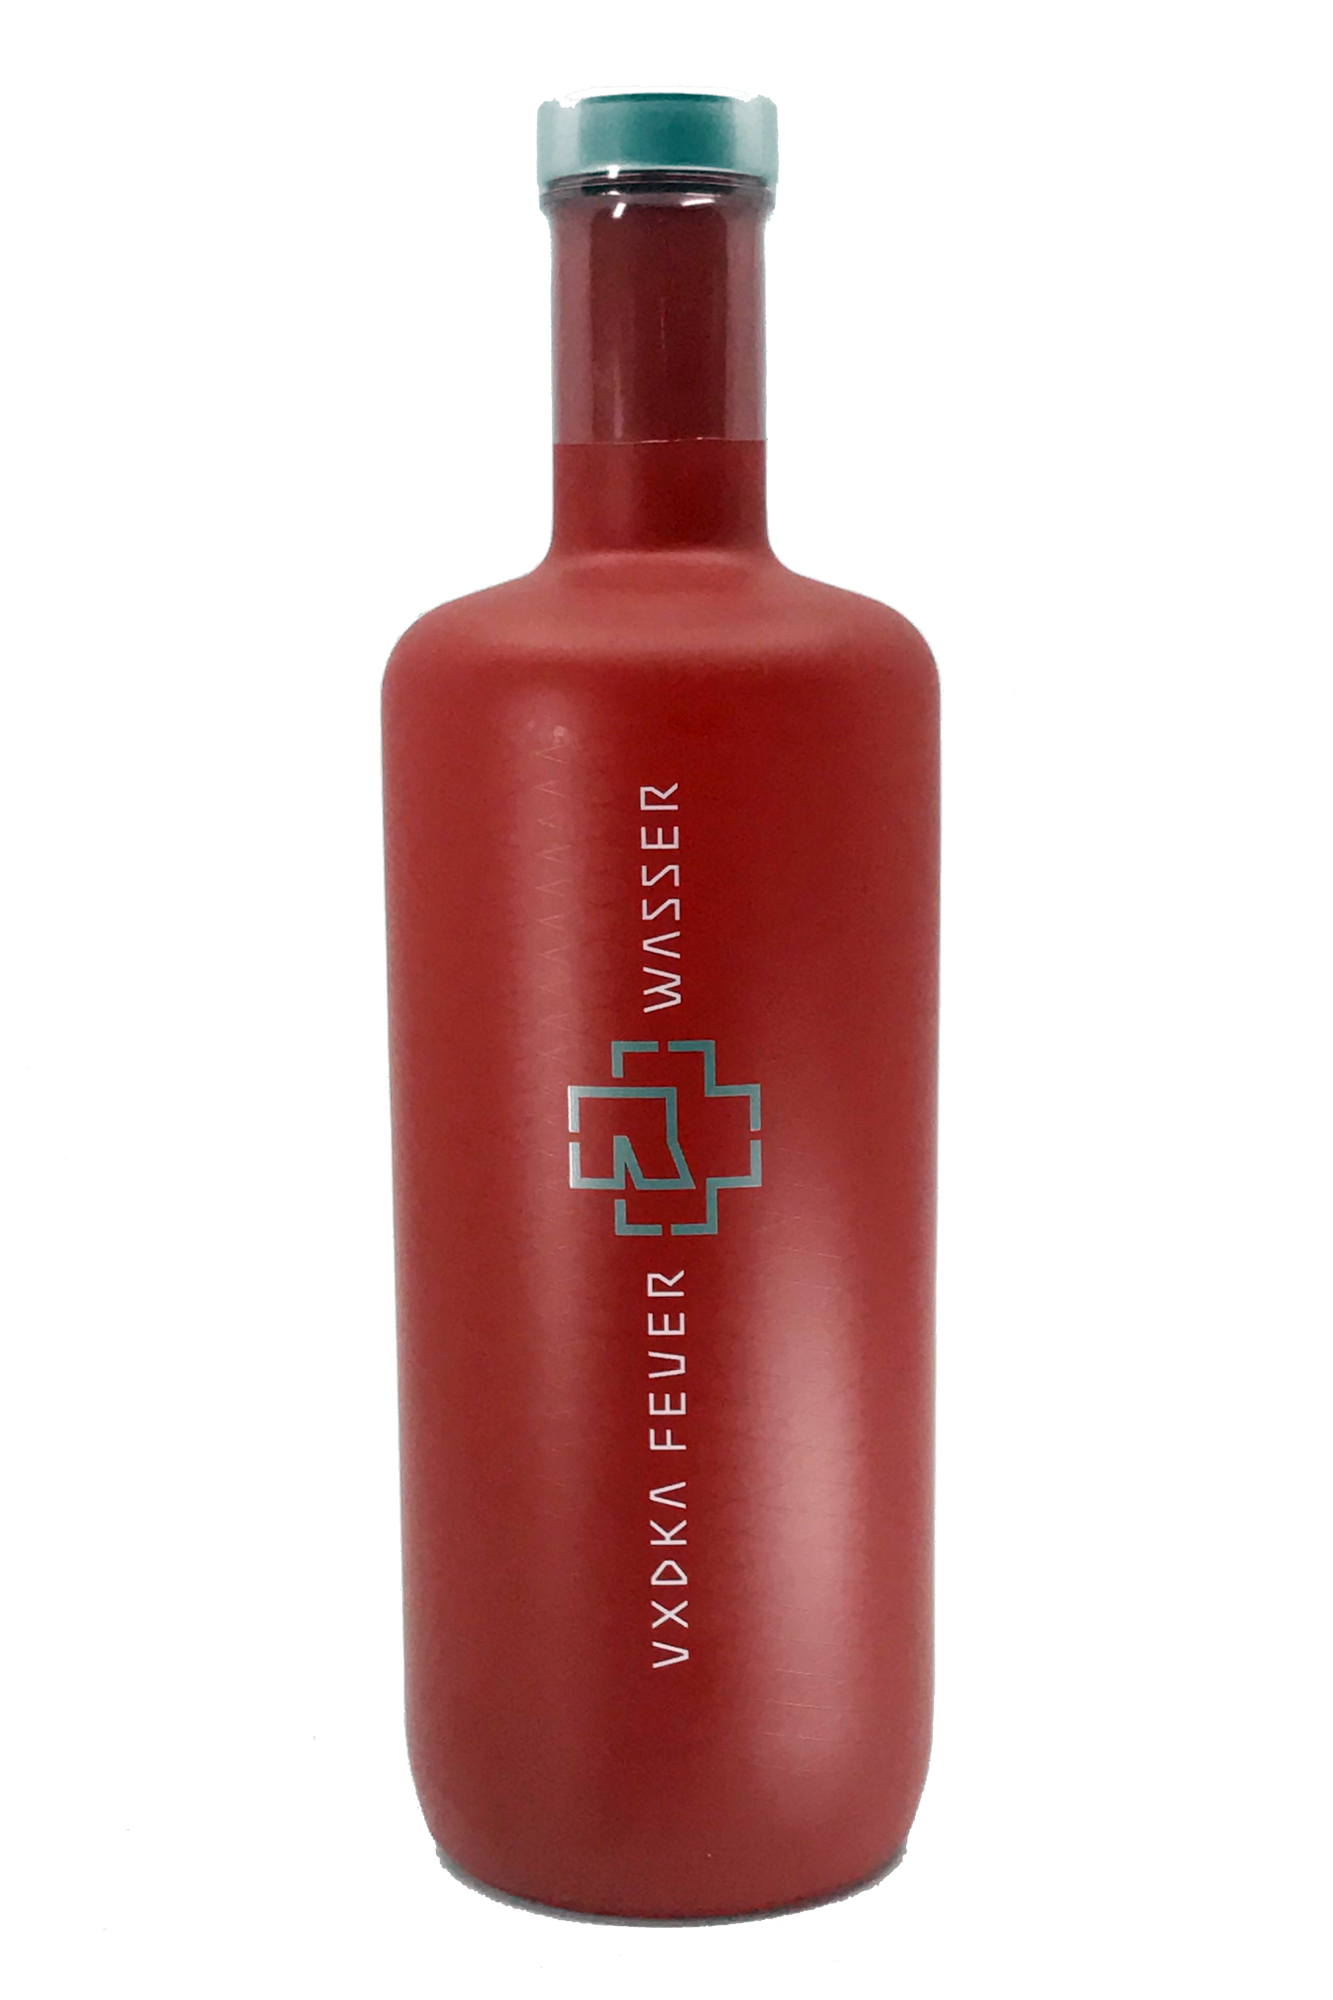 Rammstein Vodka Feuer x Wasser- erhältlich in drei Farben - 0,7l 40% vol. Alk.